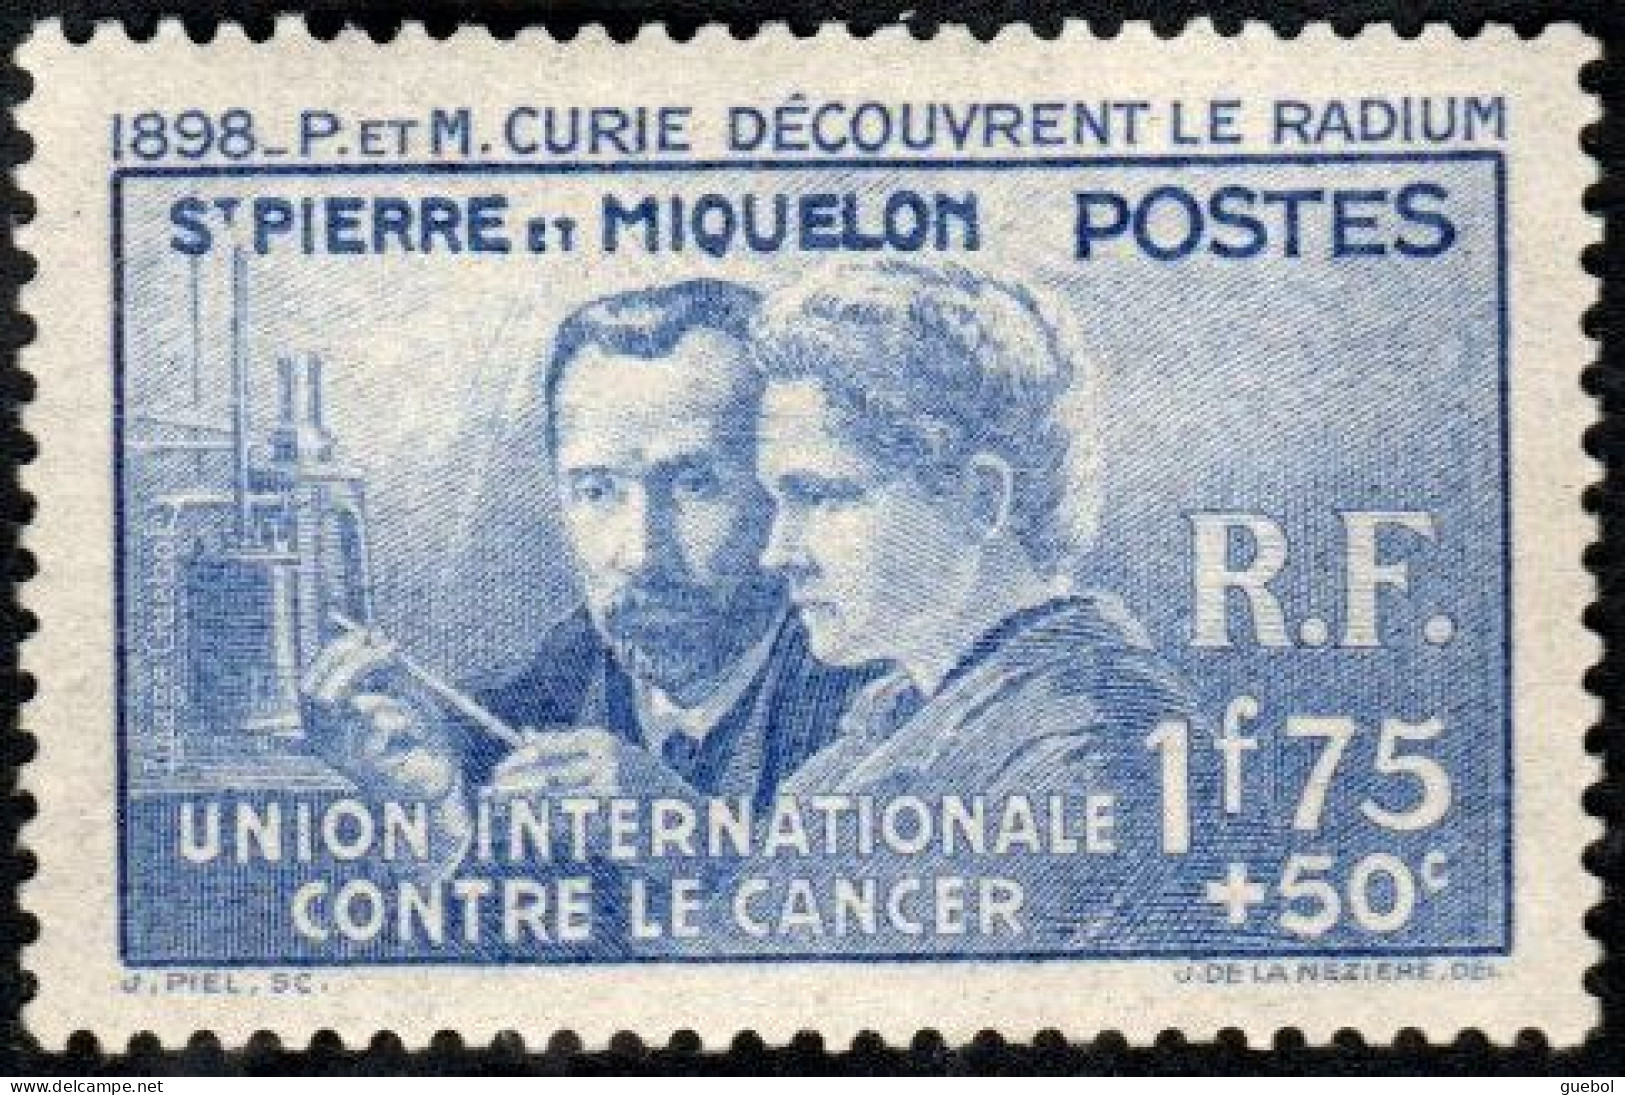 Pierre Et Marie Curie Détail De La Série * Saint Pierre Et Miquelon N° 166 - Recherche Sur Le Cancer - 1938 Pierre Et Marie Curie